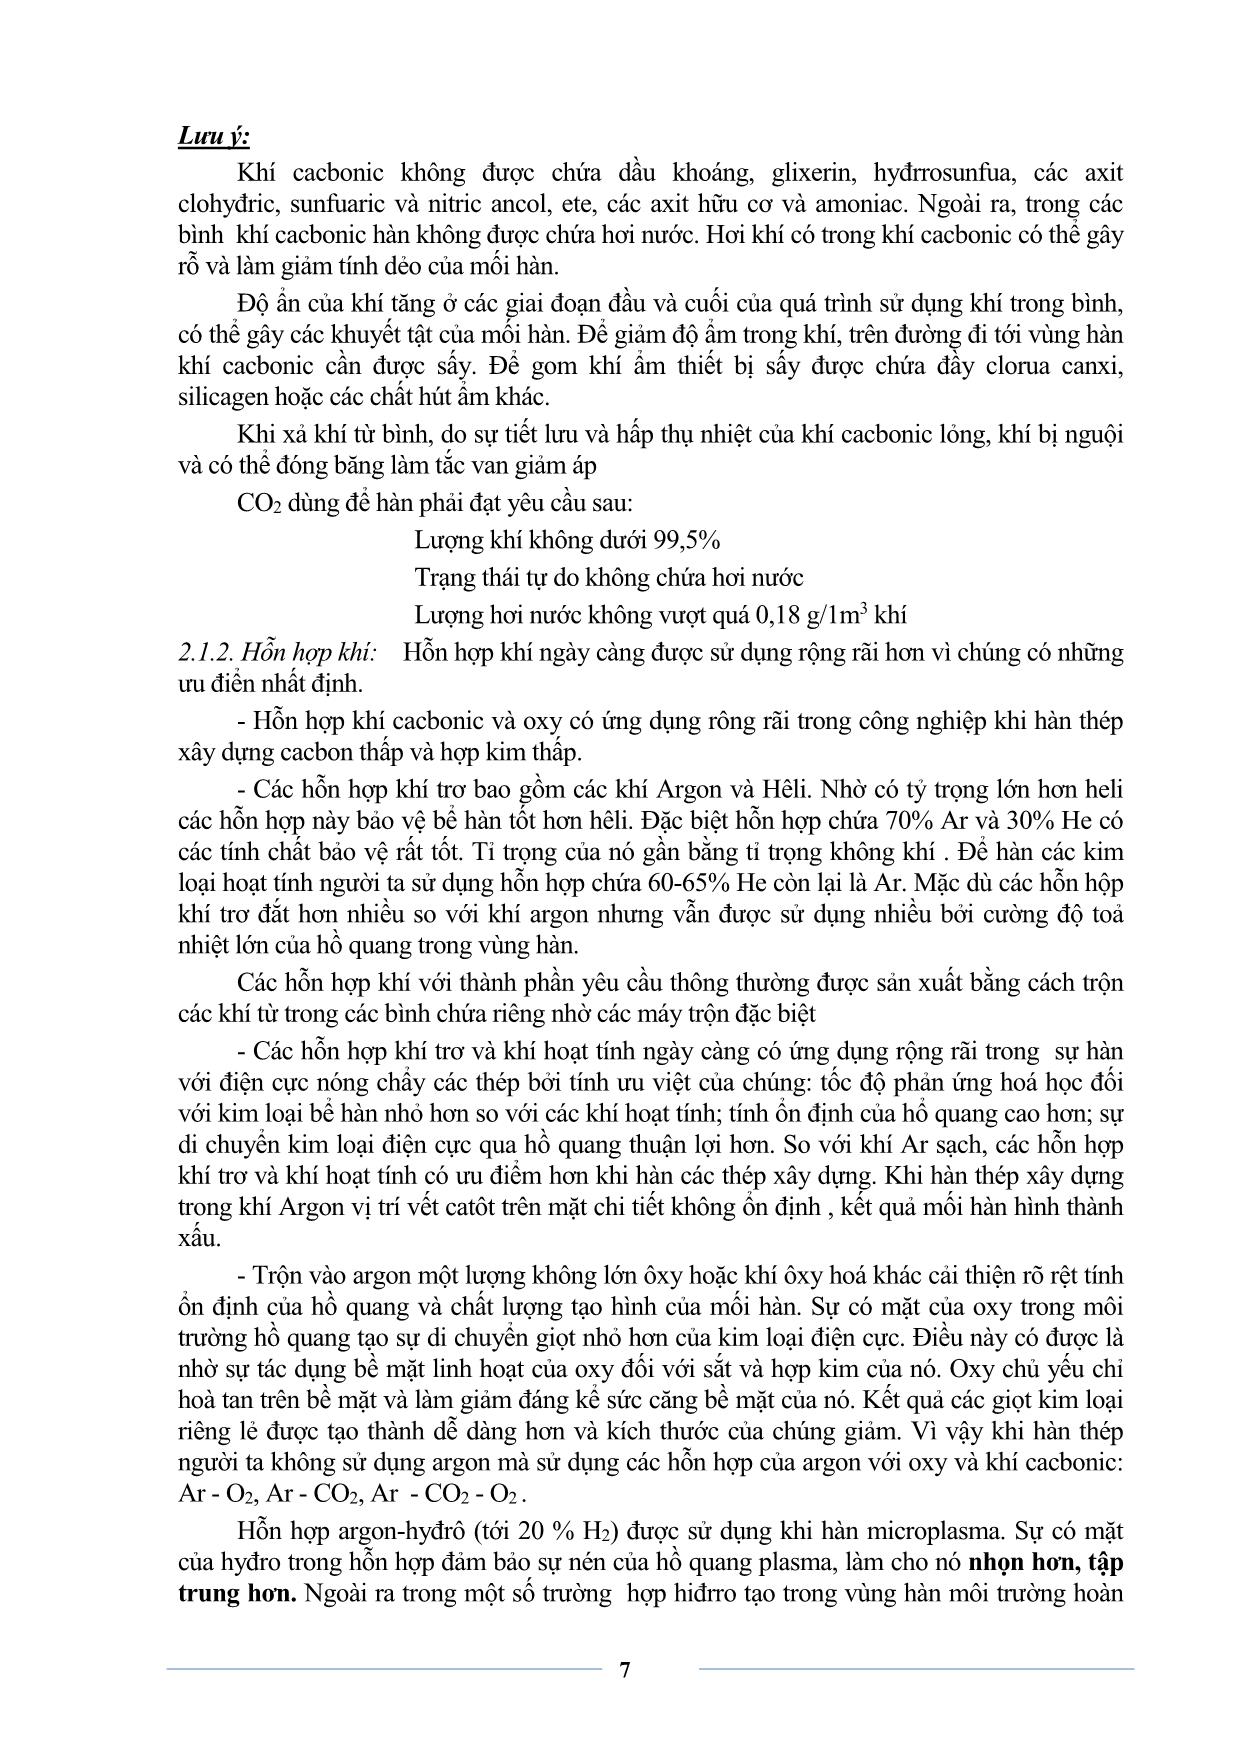 Giáo trình sơ cấp Hàn MIG-MAG trang 9